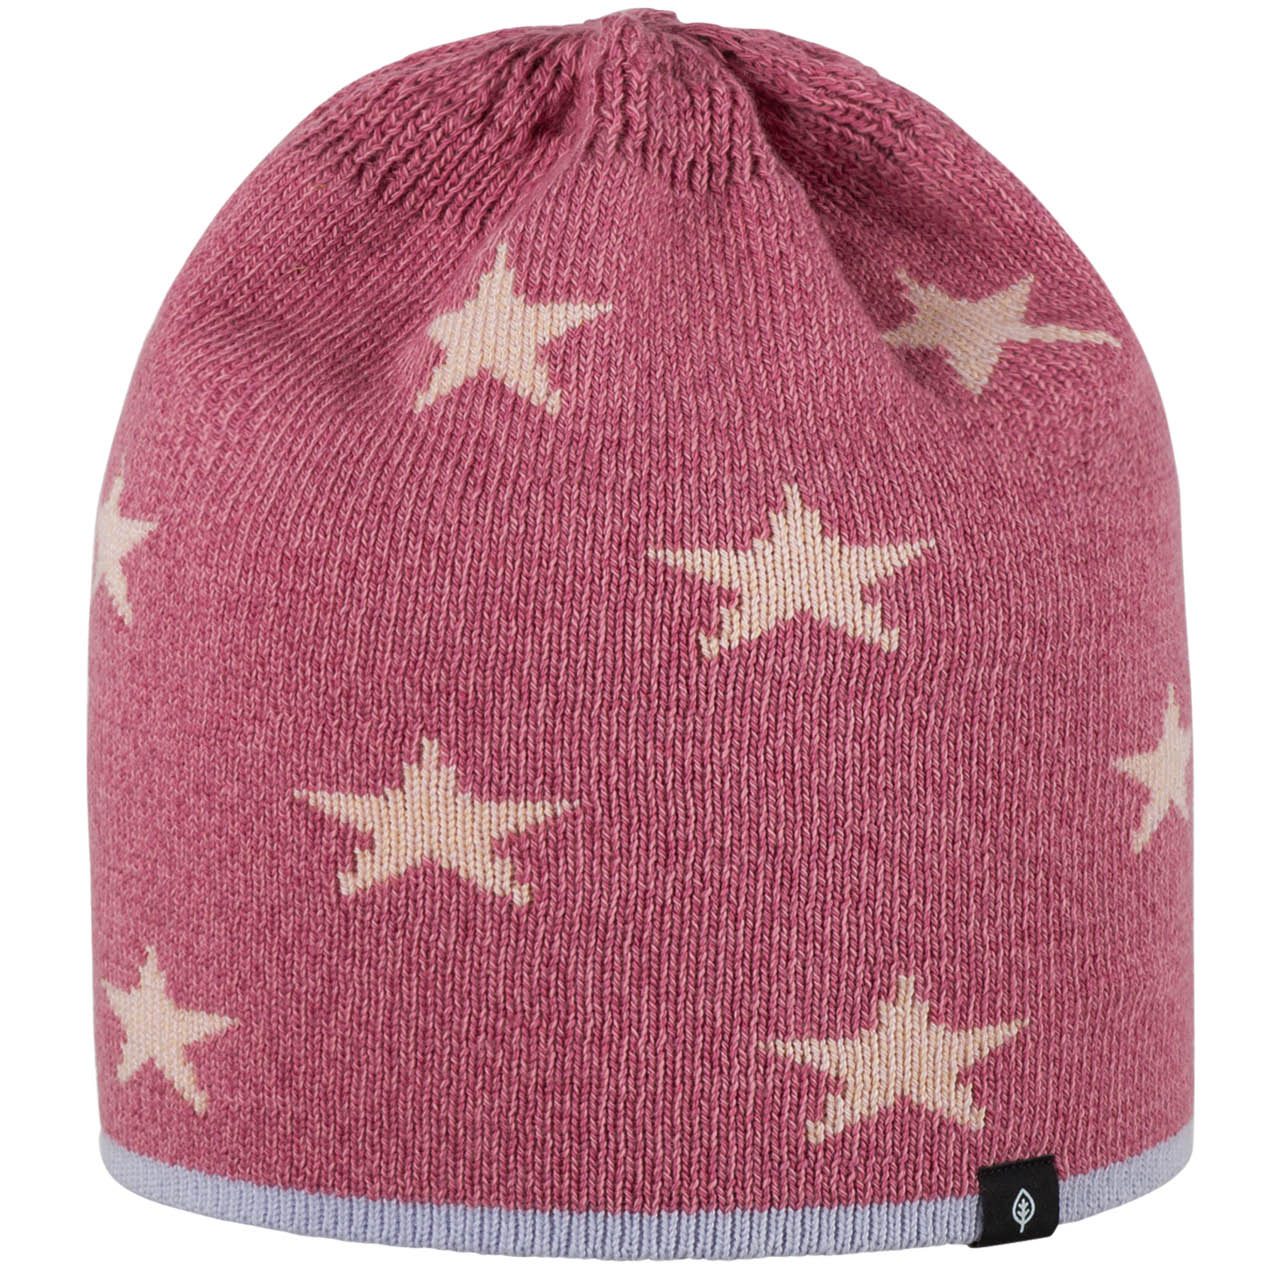 Wolle Seide Mütze Sterne rauchiges pink